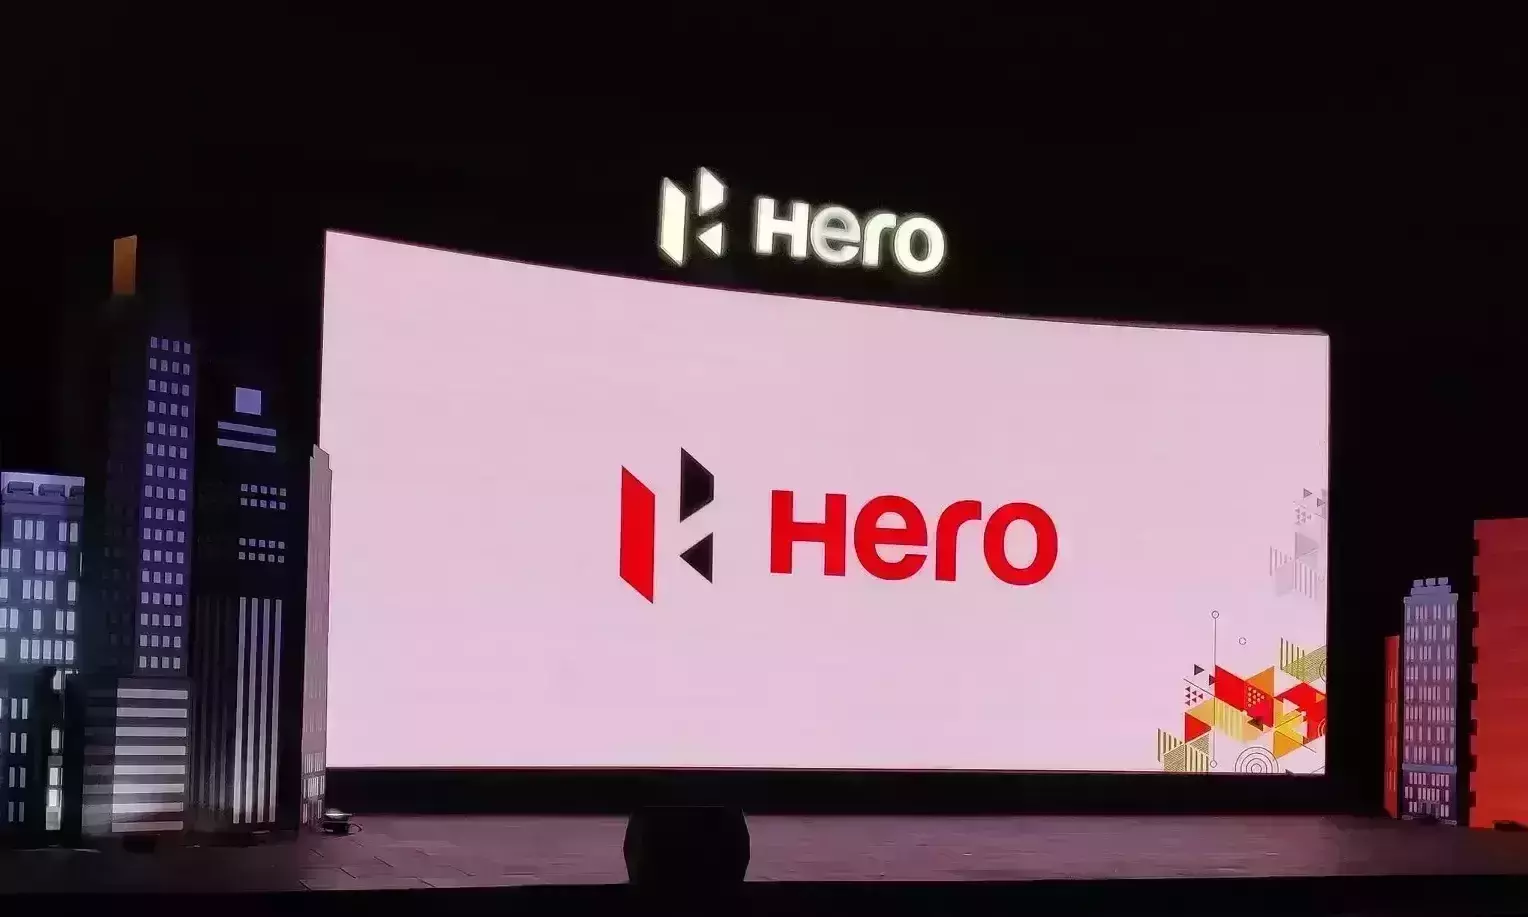 Hero Group